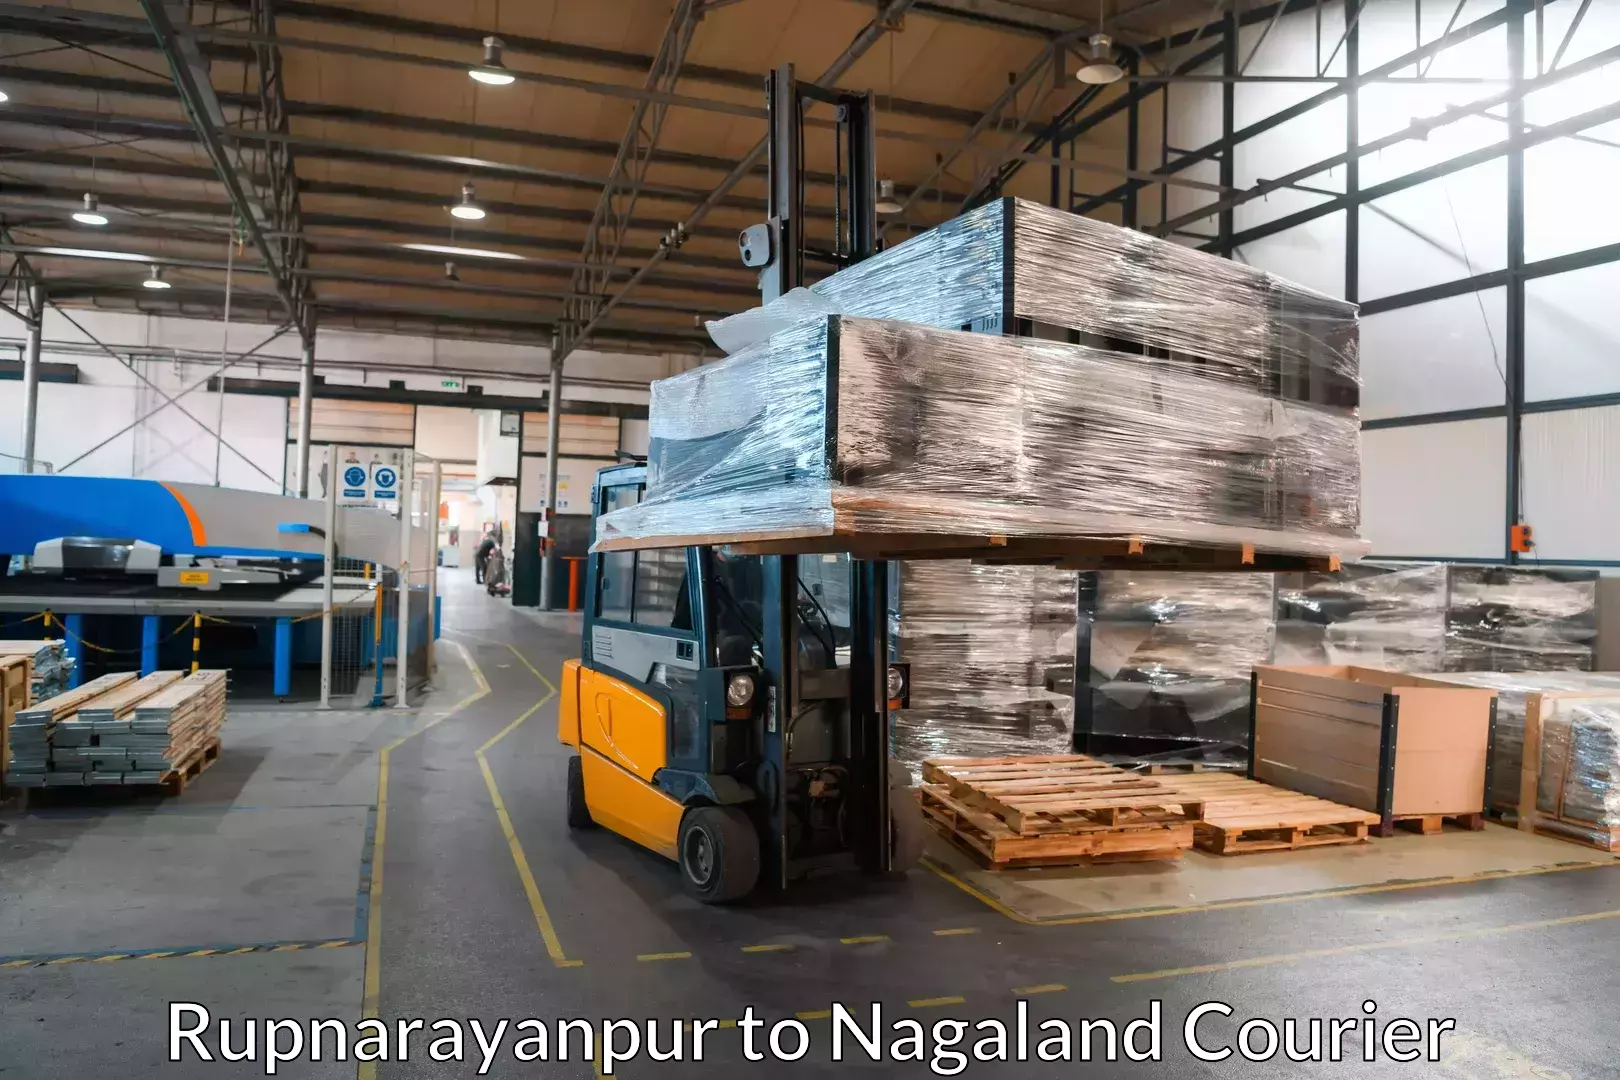 Professional moving company Rupnarayanpur to Wokha